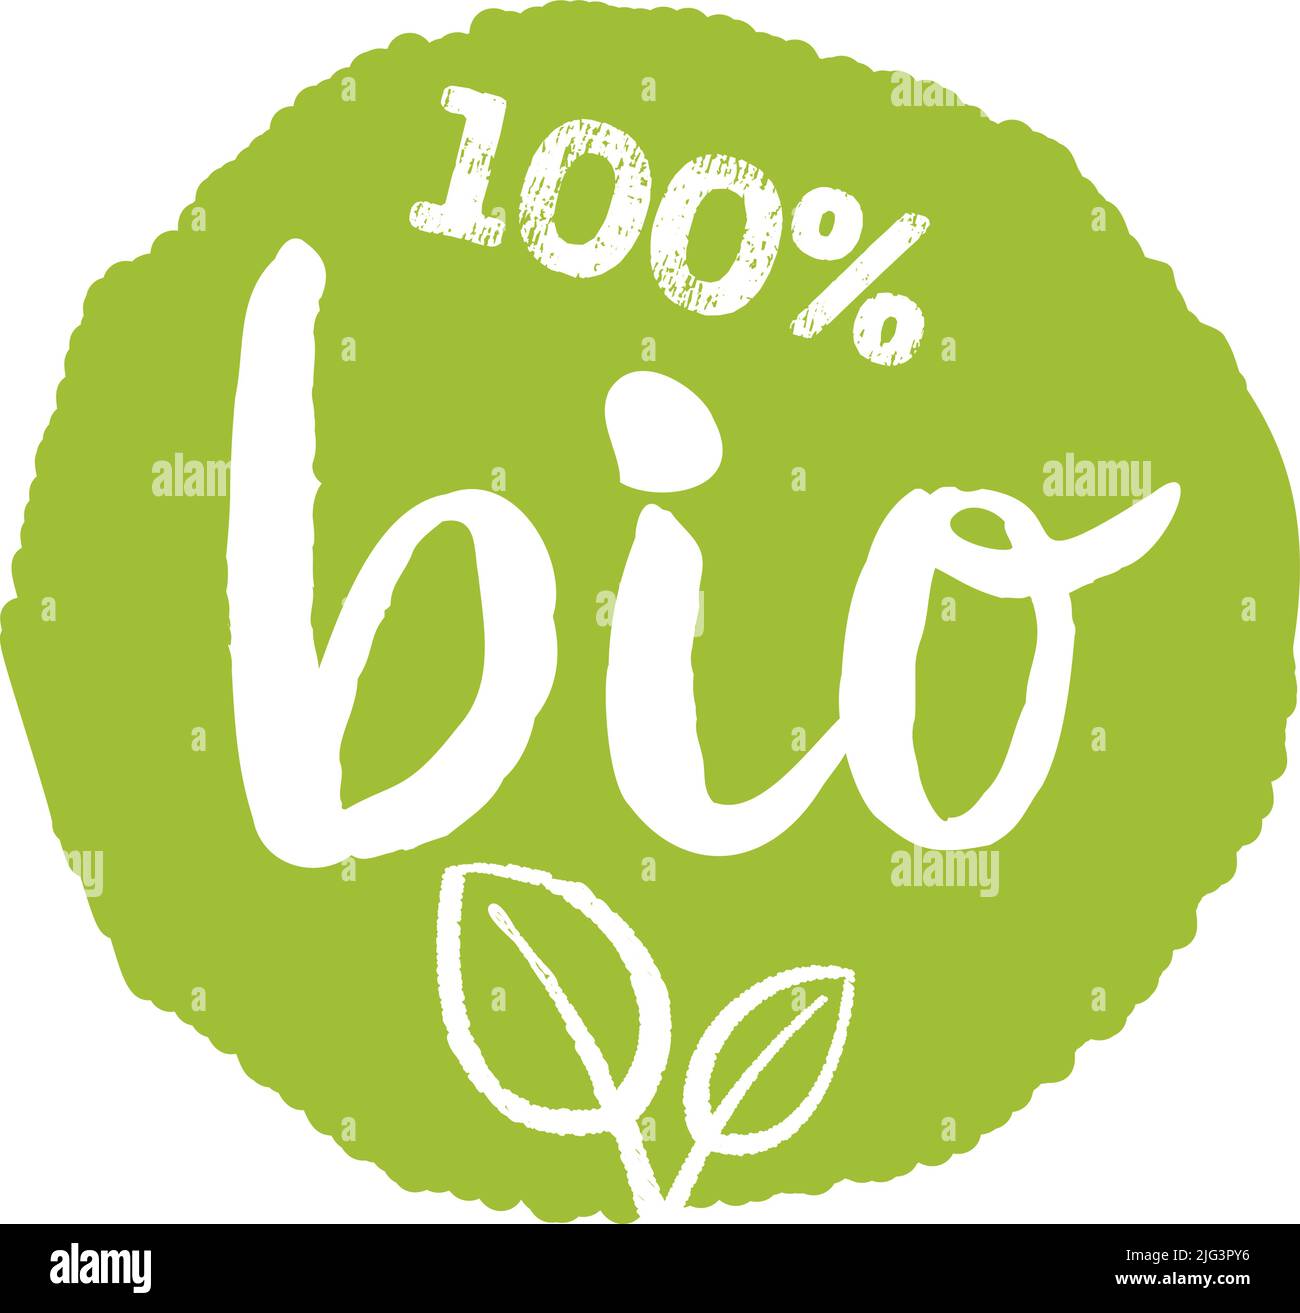 etichetta o segno biologico verde disegnata a mano al 100%, illustrazione vettoriale Illustrazione Vettoriale